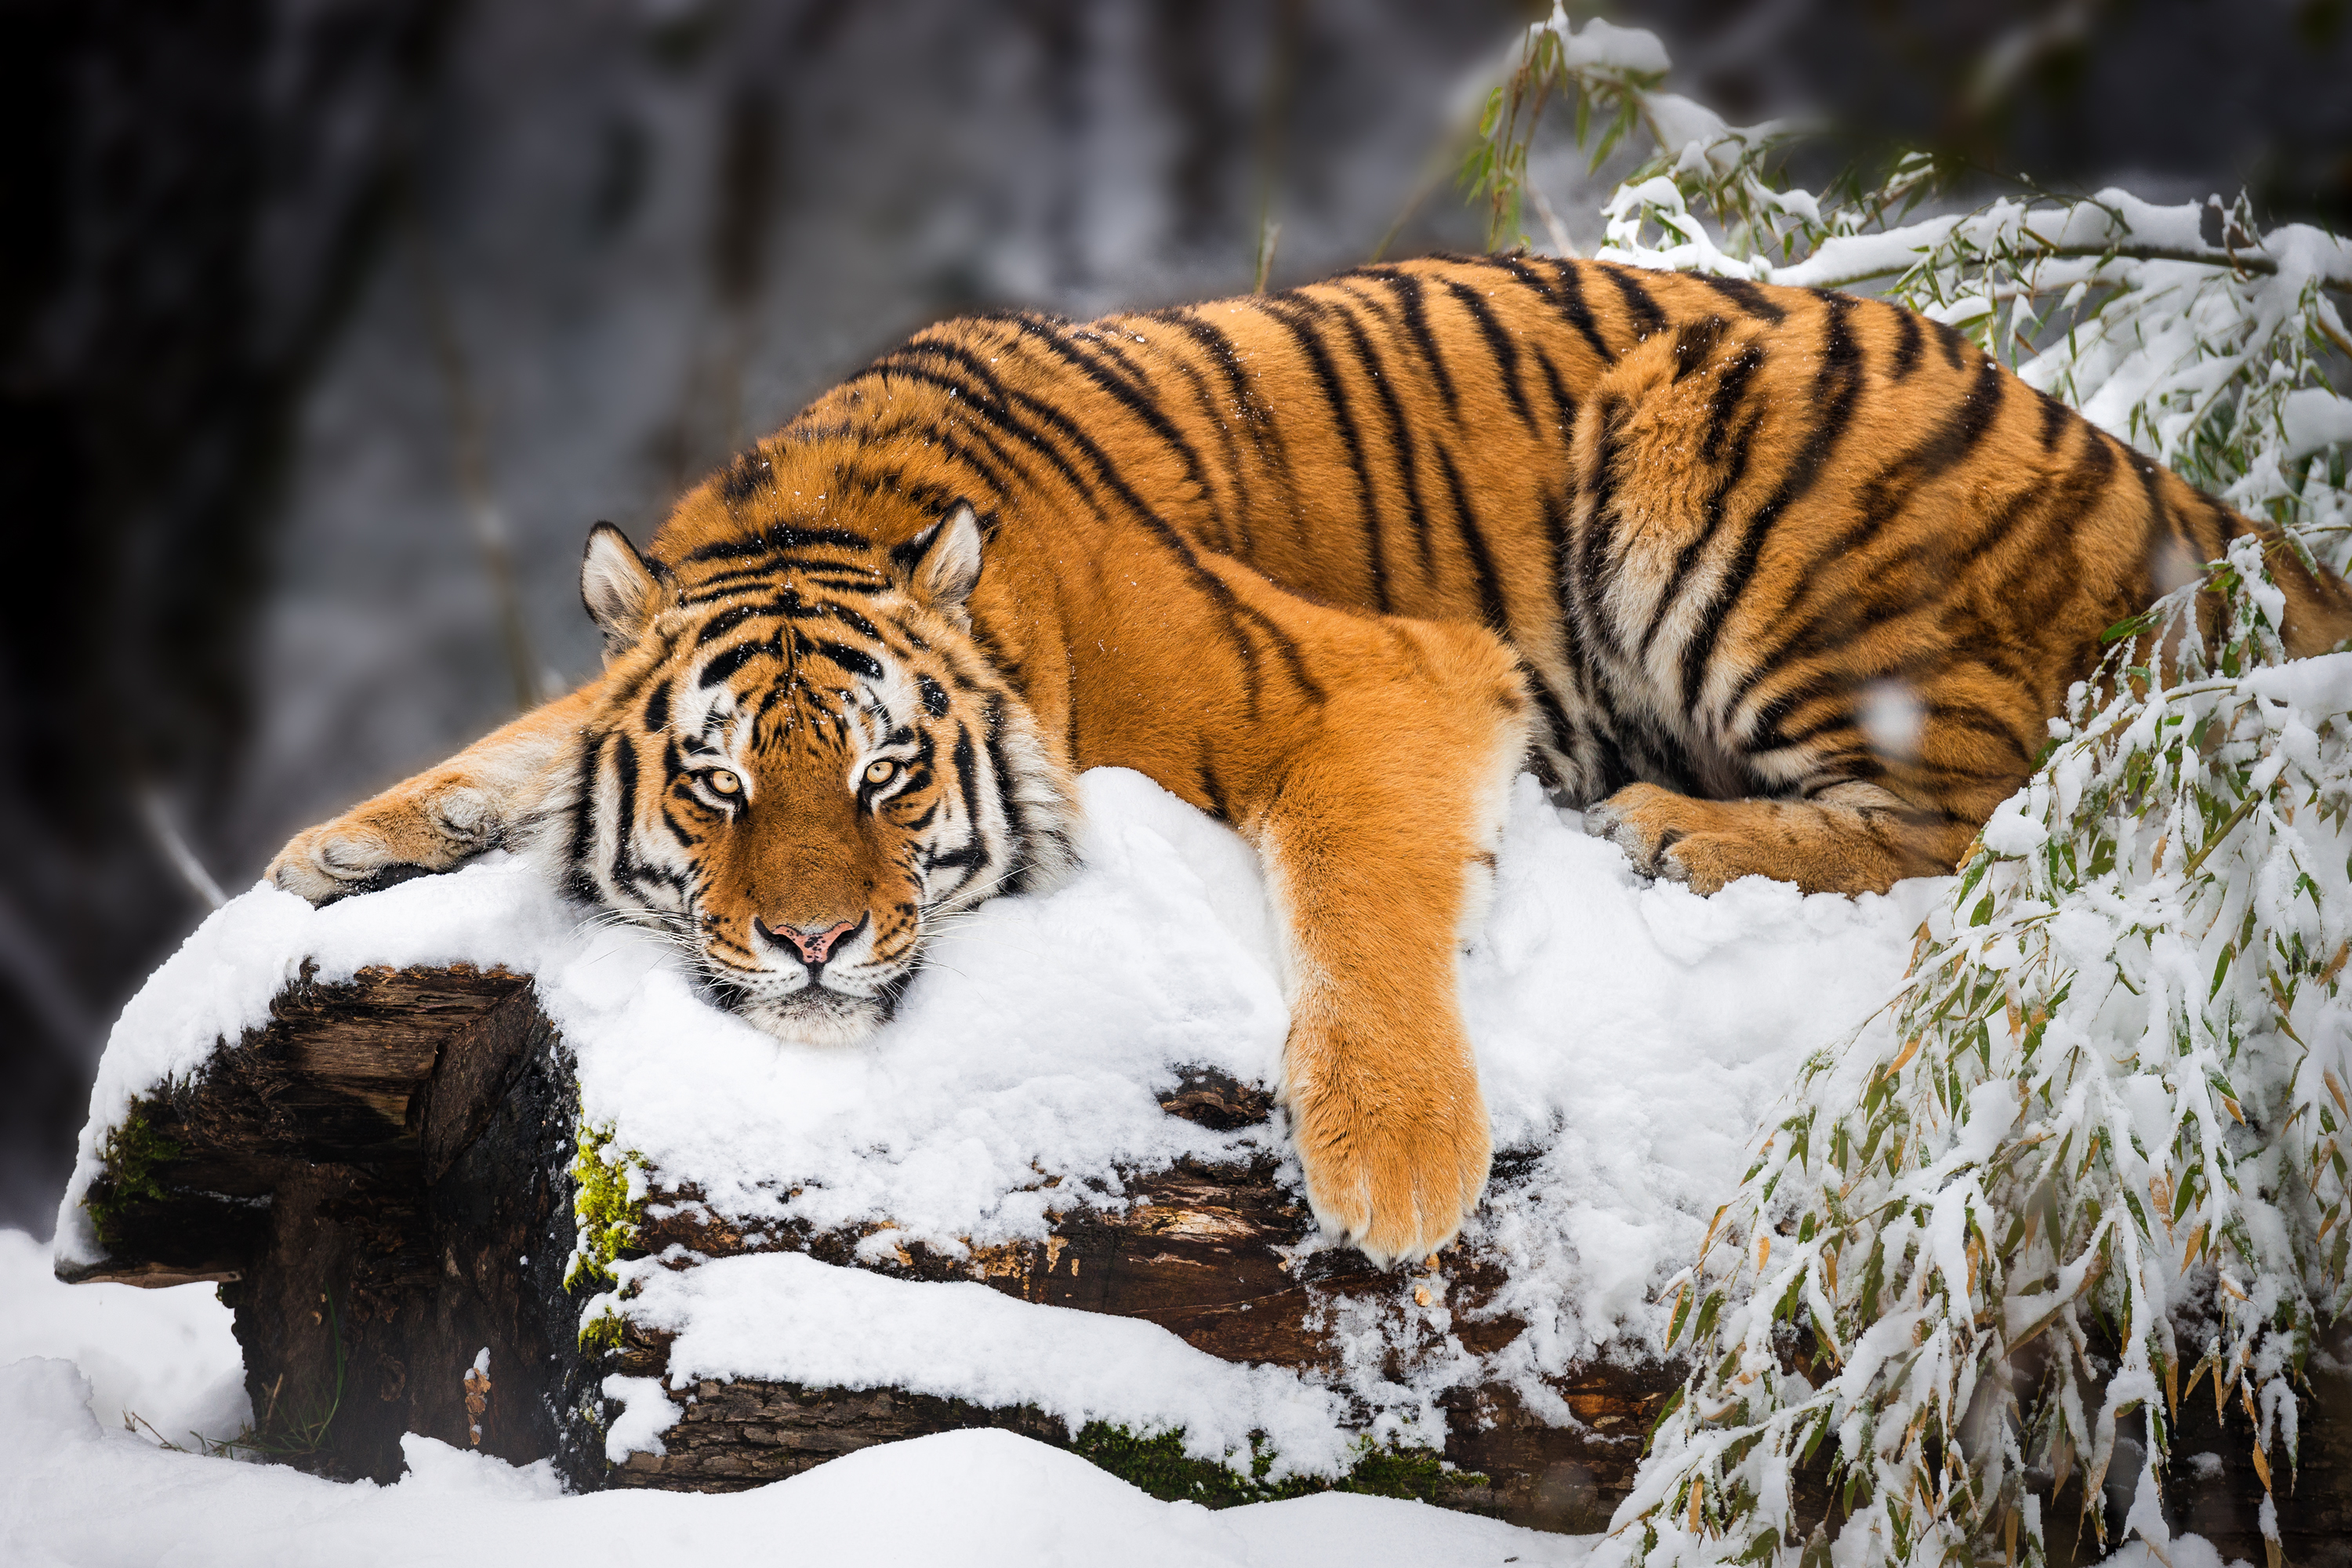 <p><strong>Сибирски тигър</strong></p>

<p>Сибирският тигър е най-голямата котка откривана в света. Сибирският тигър е наричан още &bdquo;амурски тигър&ldquo;, &bdquo;манджурски тигър&ldquo;, &bdquo;корейски тигър&ldquo; и &bdquo;усурски тигър&ldquo; в зависимост от региона, в който се намира този вид. &nbsp;Достига тегло до 650 килограма. Този вид тигър може да се намери в брезовата гора на Русия и Далечния Изток, Китай и Корея.&nbsp;</p>

<p>Изчезването на този вид се дължи на ловът, който се упражнява от хората. При подробно преброяване са открити общо 562 диви сибирски тигри в Русия. Този вид е абсолютно незаконен за ловуване.&nbsp;</p>